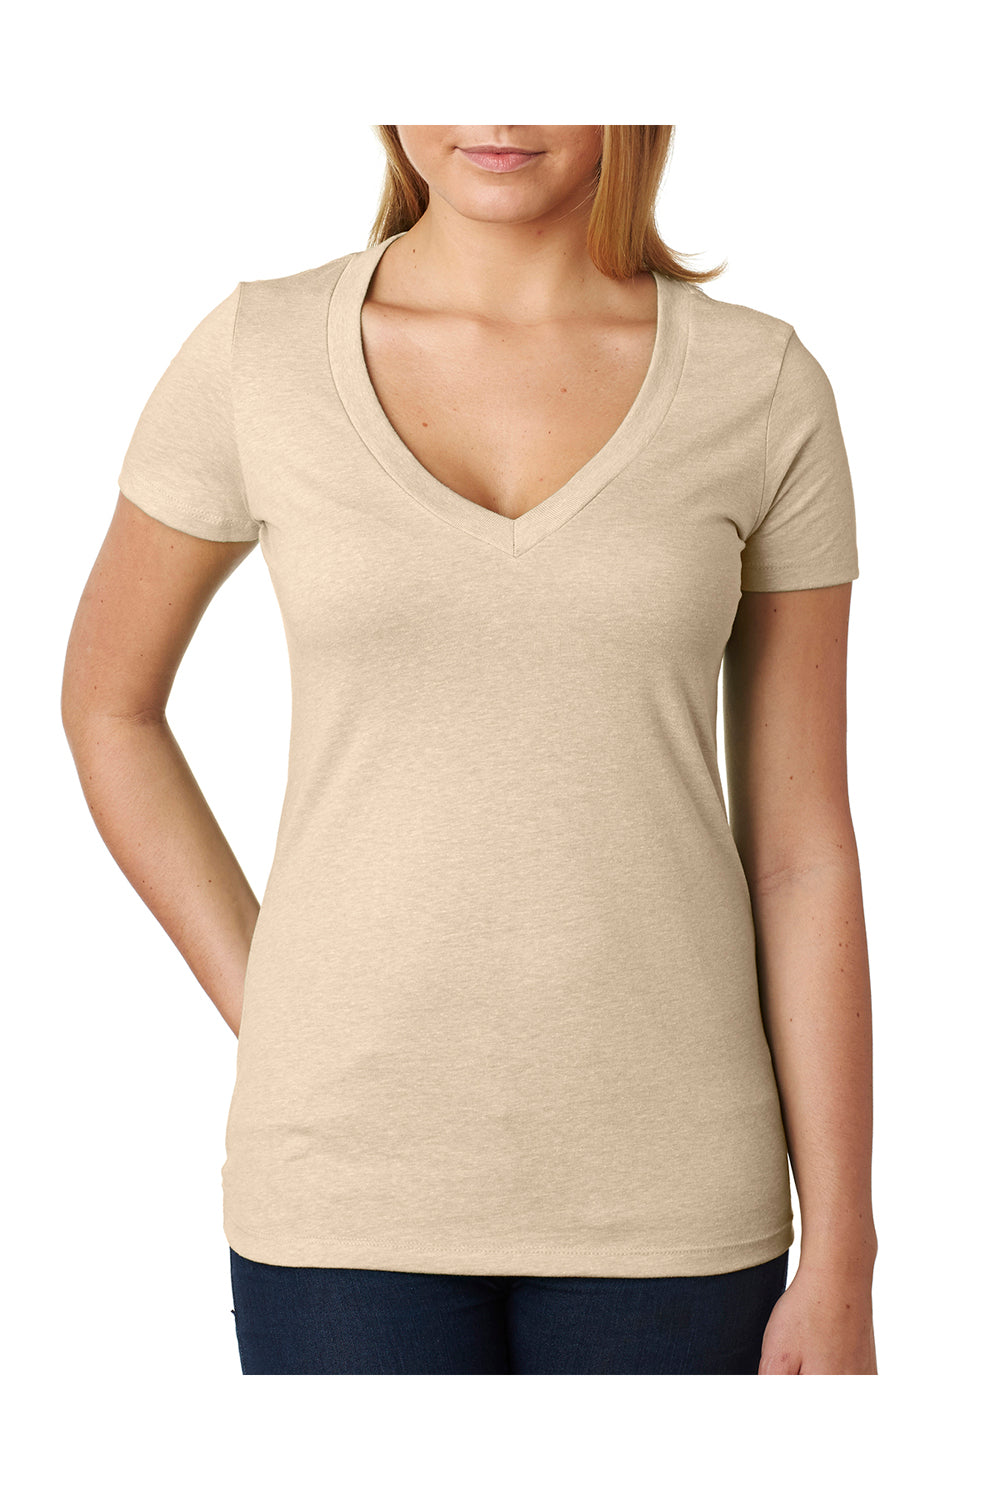 Next Level 6640 Womens CVC Jersey Short Sleeve V-Neck T-Shirt Cream Front